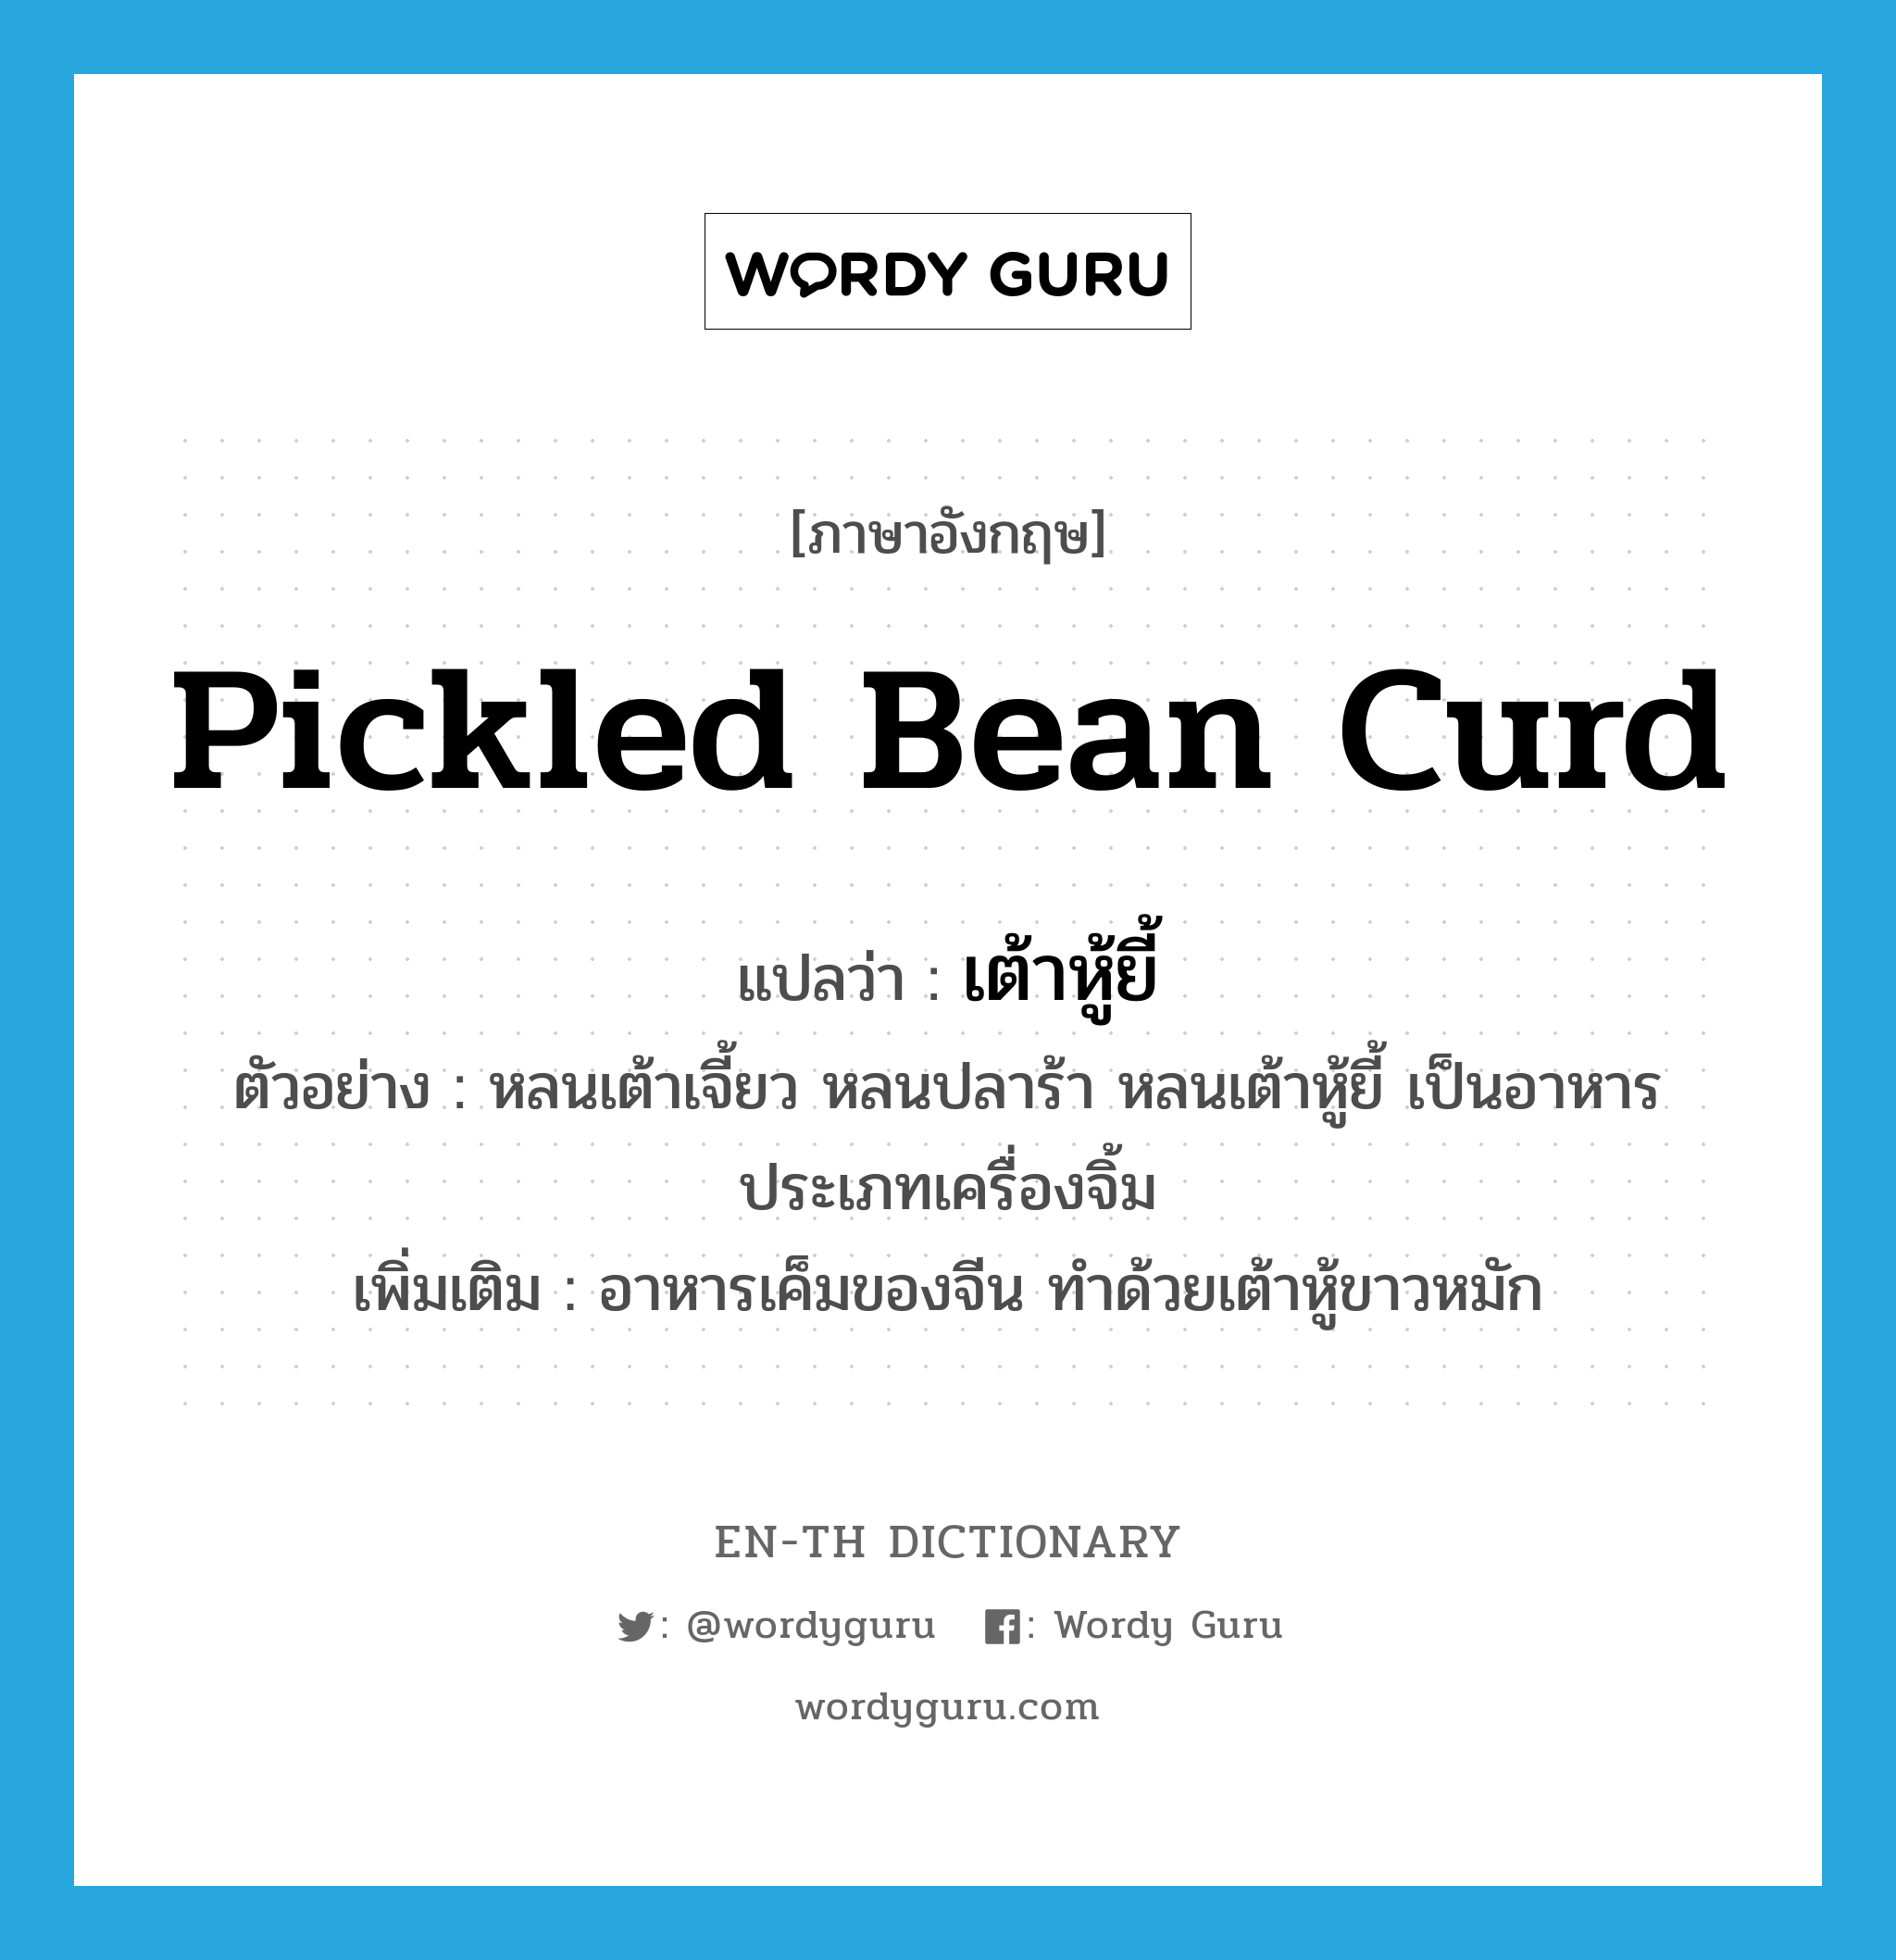 pickled bean curd แปลว่า?, คำศัพท์ภาษาอังกฤษ pickled bean curd แปลว่า เต้าหู้ยี้ ประเภท N ตัวอย่าง หลนเต้าเจี้ยว หลนปลาร้า หลนเต้าหู้ยี้ เป็นอาหารประเภทเครื่องจิ้ม เพิ่มเติม อาหารเค็มของจีน ทำด้วยเต้าหู้ขาวหมัก หมวด N